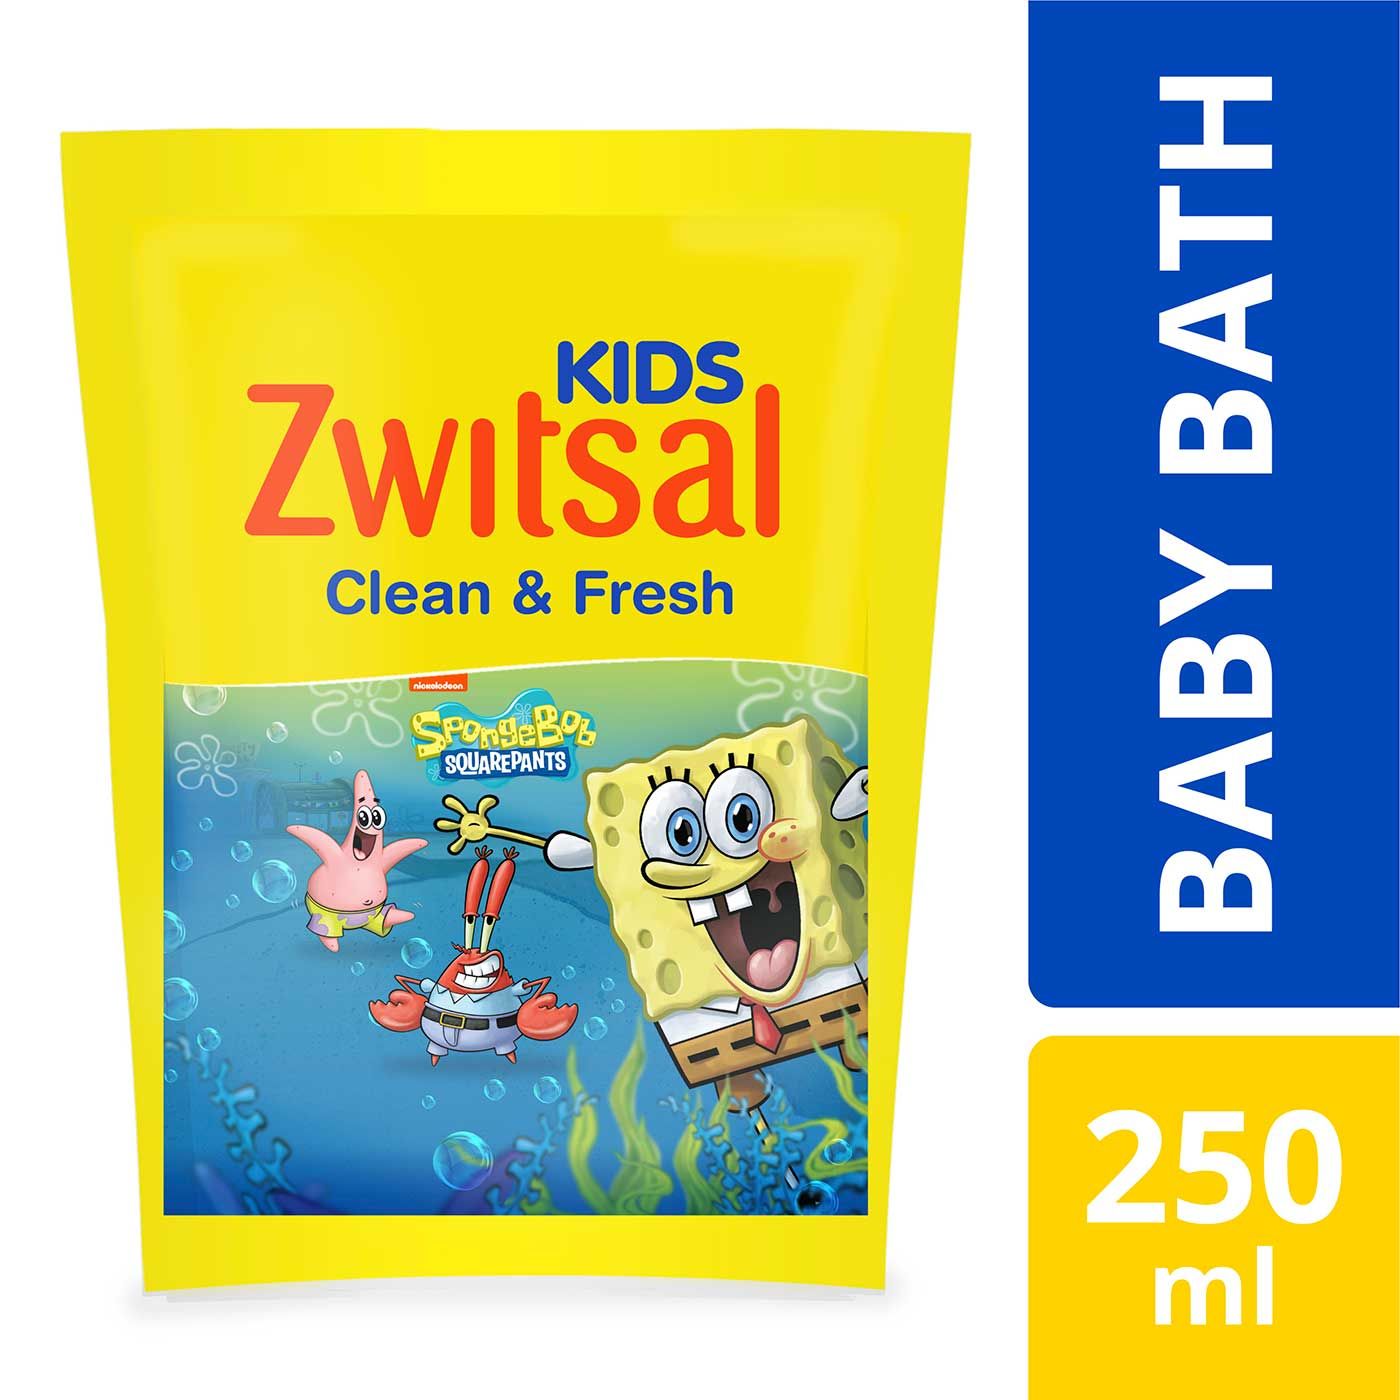 Zwitsal Kids Bubble Bath Blue Clean & Fresh 250 ml - 2